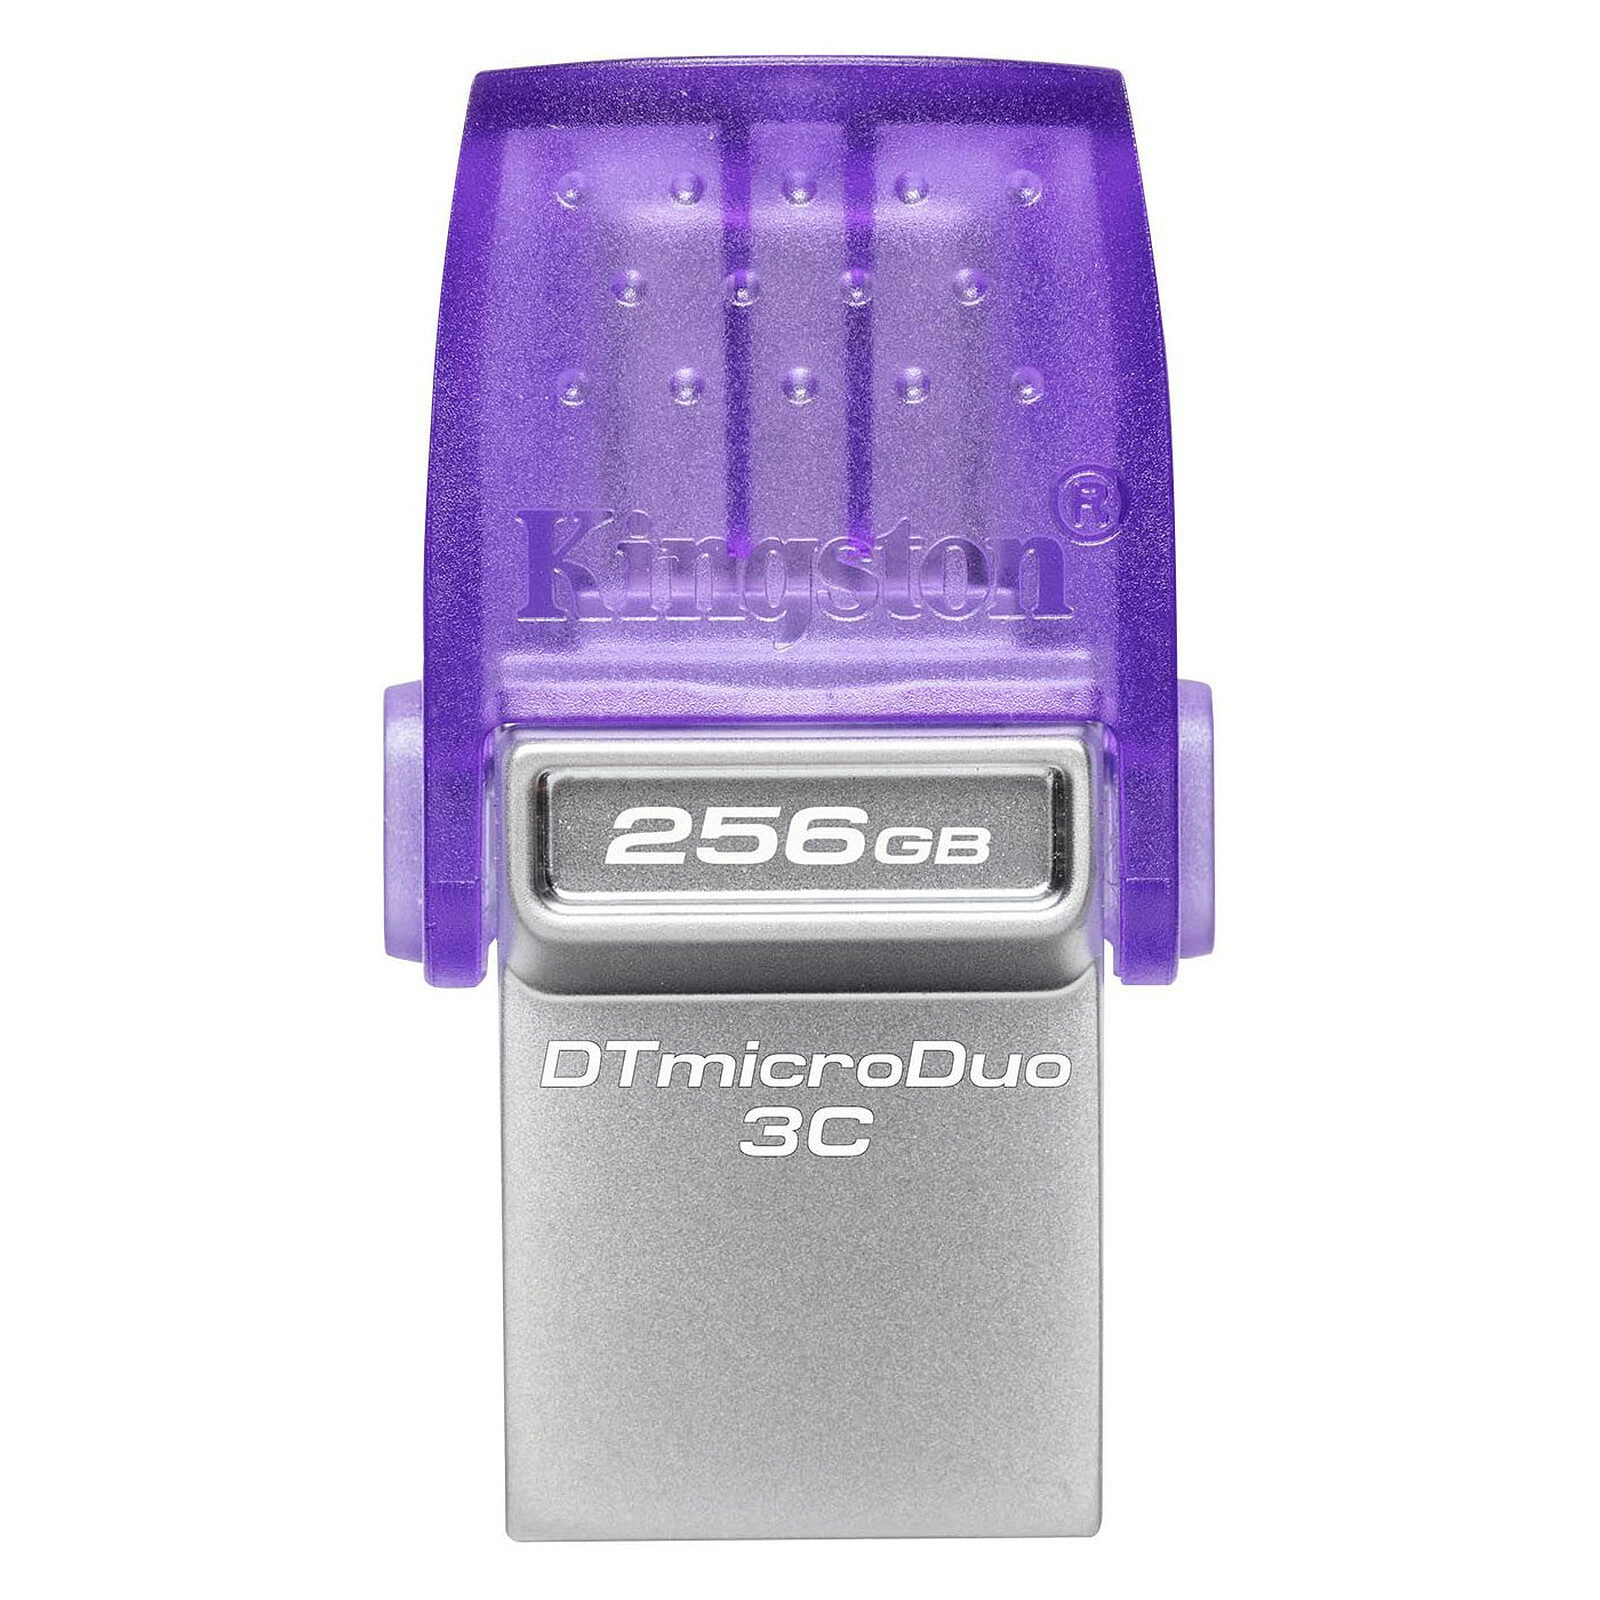 SanDisk Ultra Clé USB 3.0 64 Go Rouge - Clé USB - LDLC